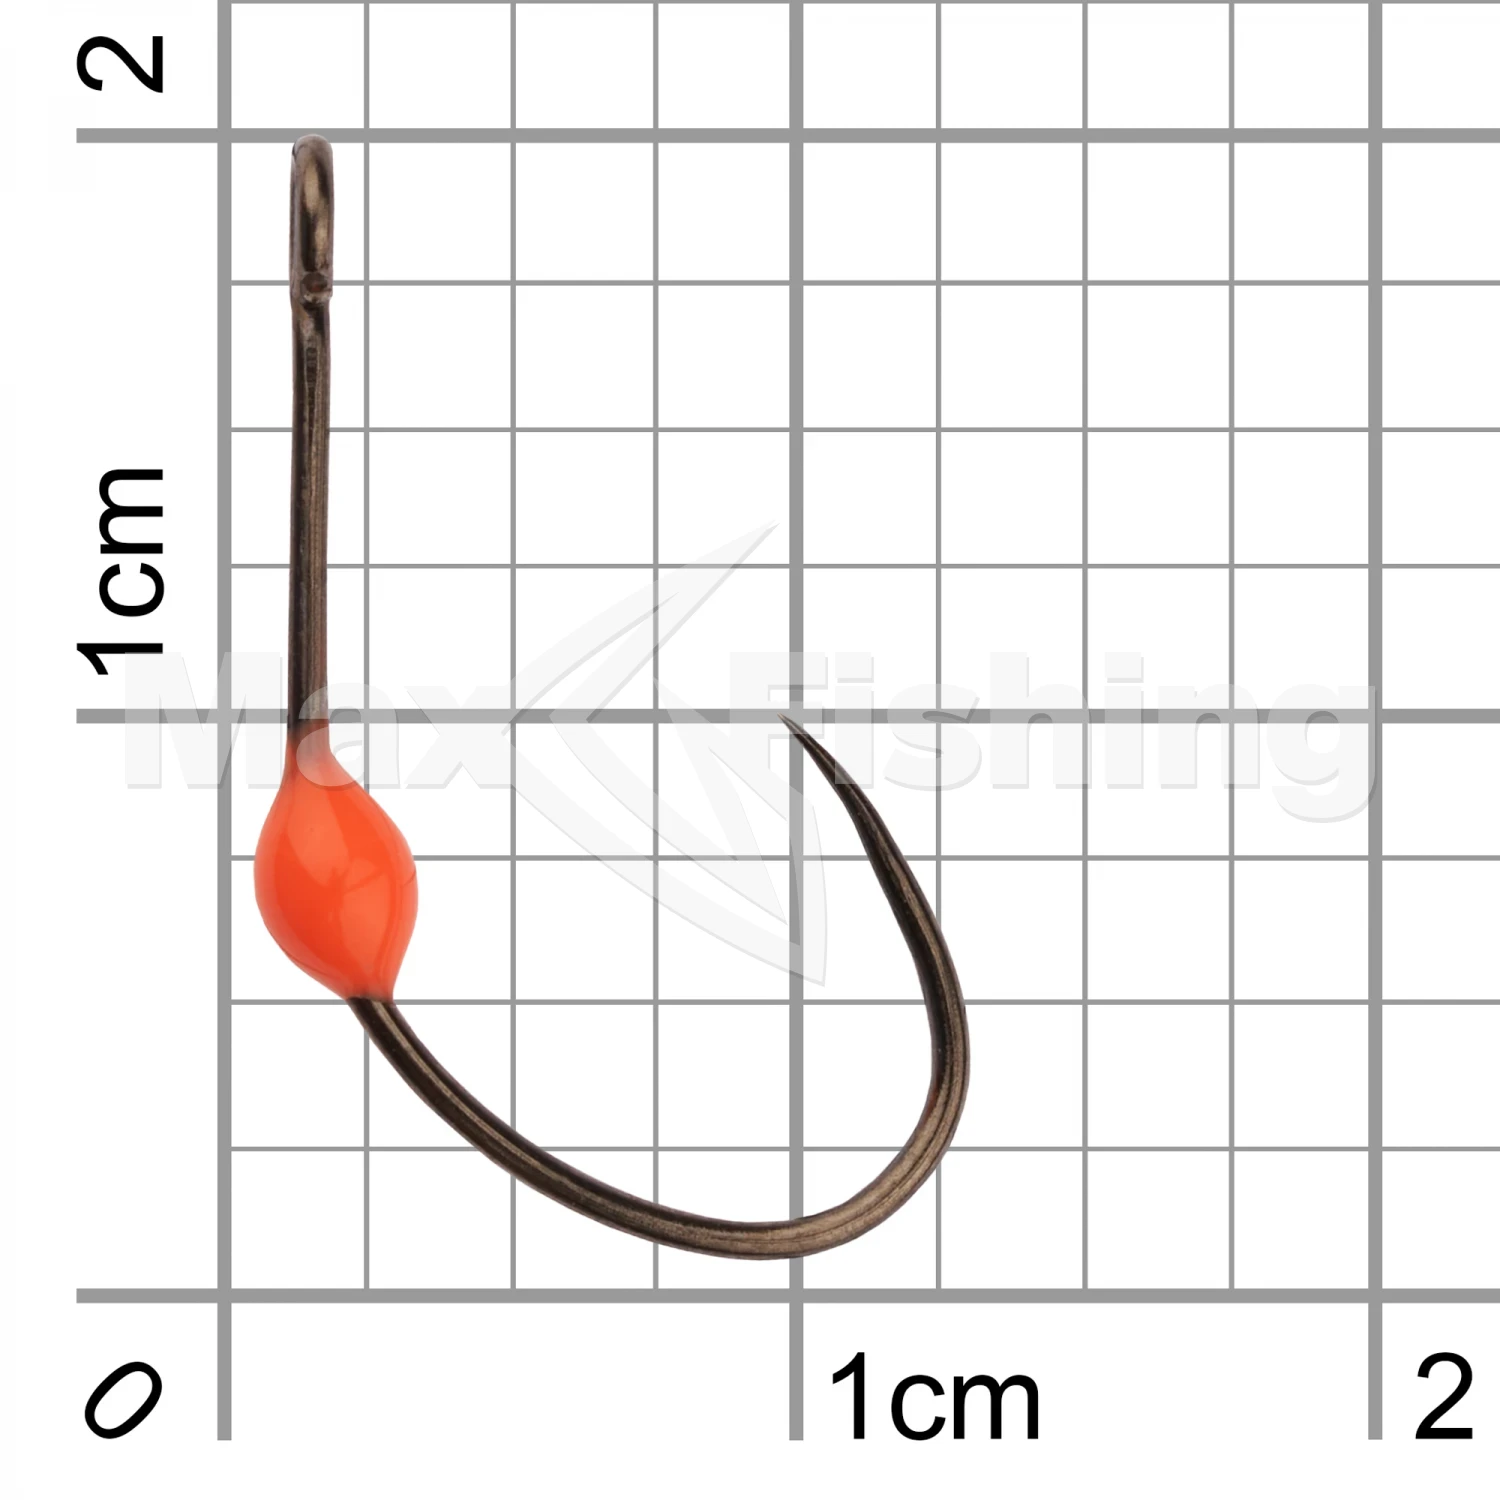 Крючок одинарный LureMax Trout LT37B Orange #6 (10шт)